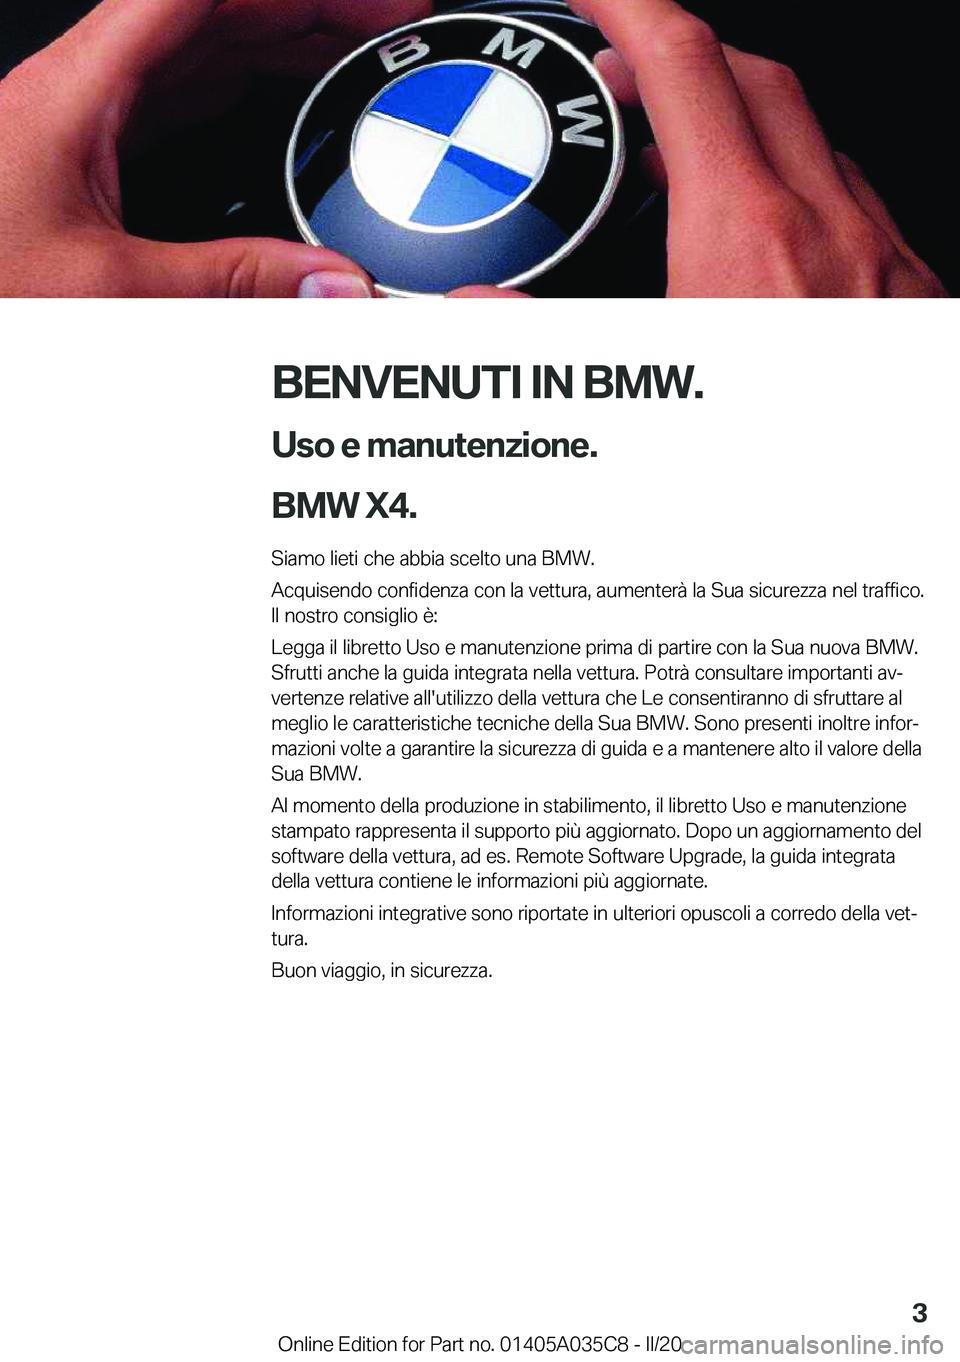 BMW X4 2020  Libretti Di Uso E manutenzione (in Italian) �B�E�N�V�E�N�U�T�I��I�N��B�M�W�.�U�s�o��e��m�a�n�u�t�e�n�z�i�o�n�e�.
�B�M�W��X�4�.
�S�i�a�m�o��l�i�e�t�i��c�h�e��a�b�b�i�a��s�c�e�l�t�o��u�n�a��B�M�W�.
�A�c�q�u�i�s�e�n�d�o��c�o�n�f�i�d�e�